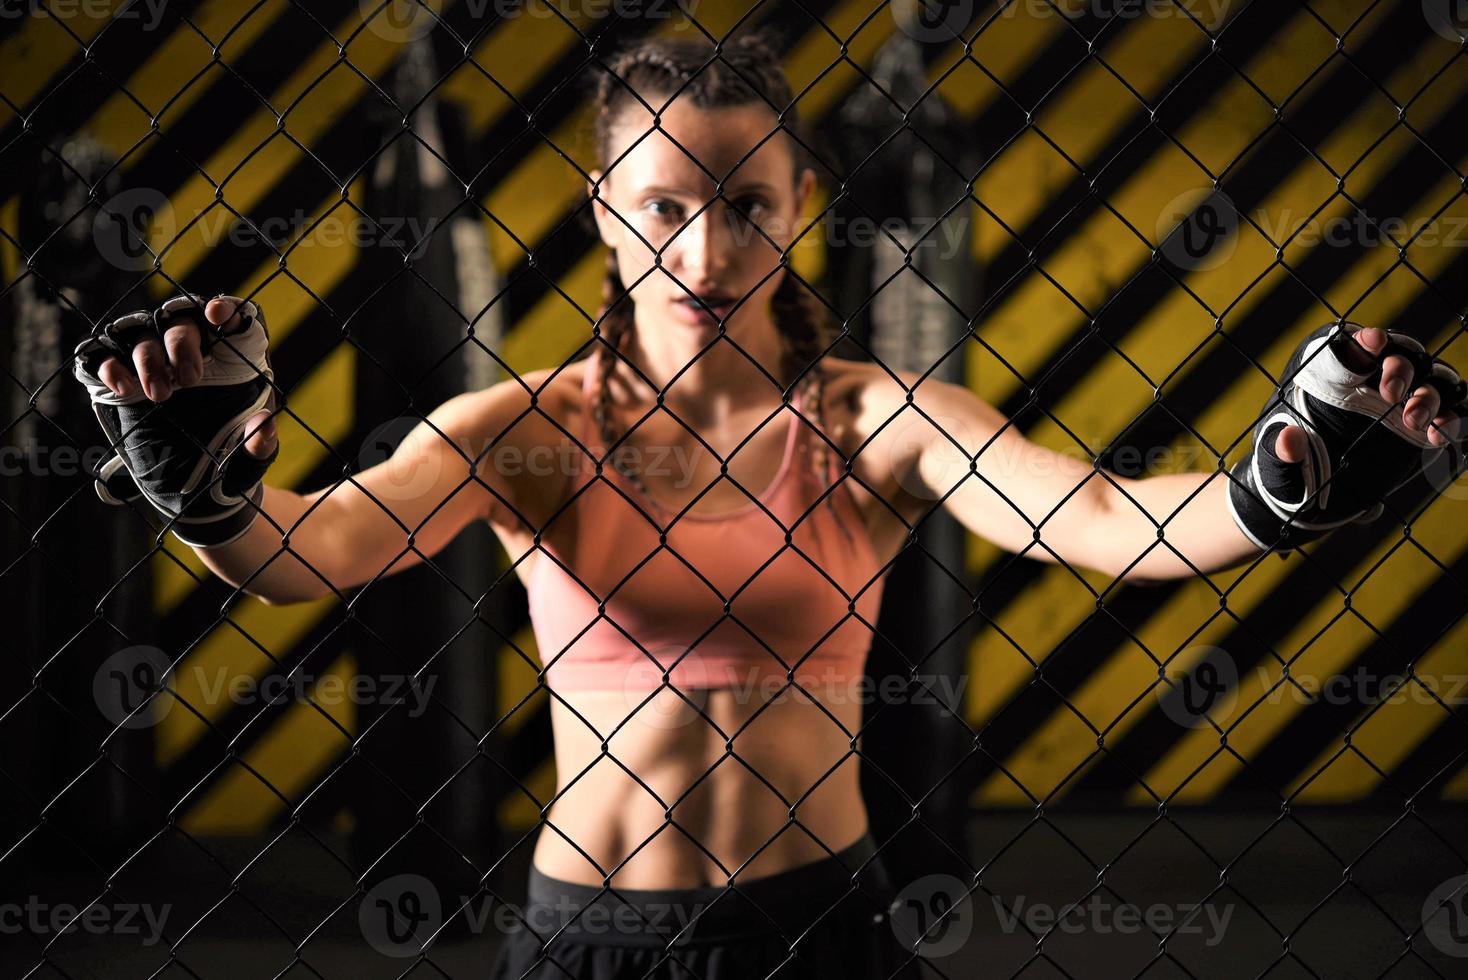 Eine weibliche Auszubildende gemischter Kampfkünste, die eine Handpackung trägt, wärmt sich im Ringkäfig auf, indem sie ihren Rücken und ihre Beine streckt. foto